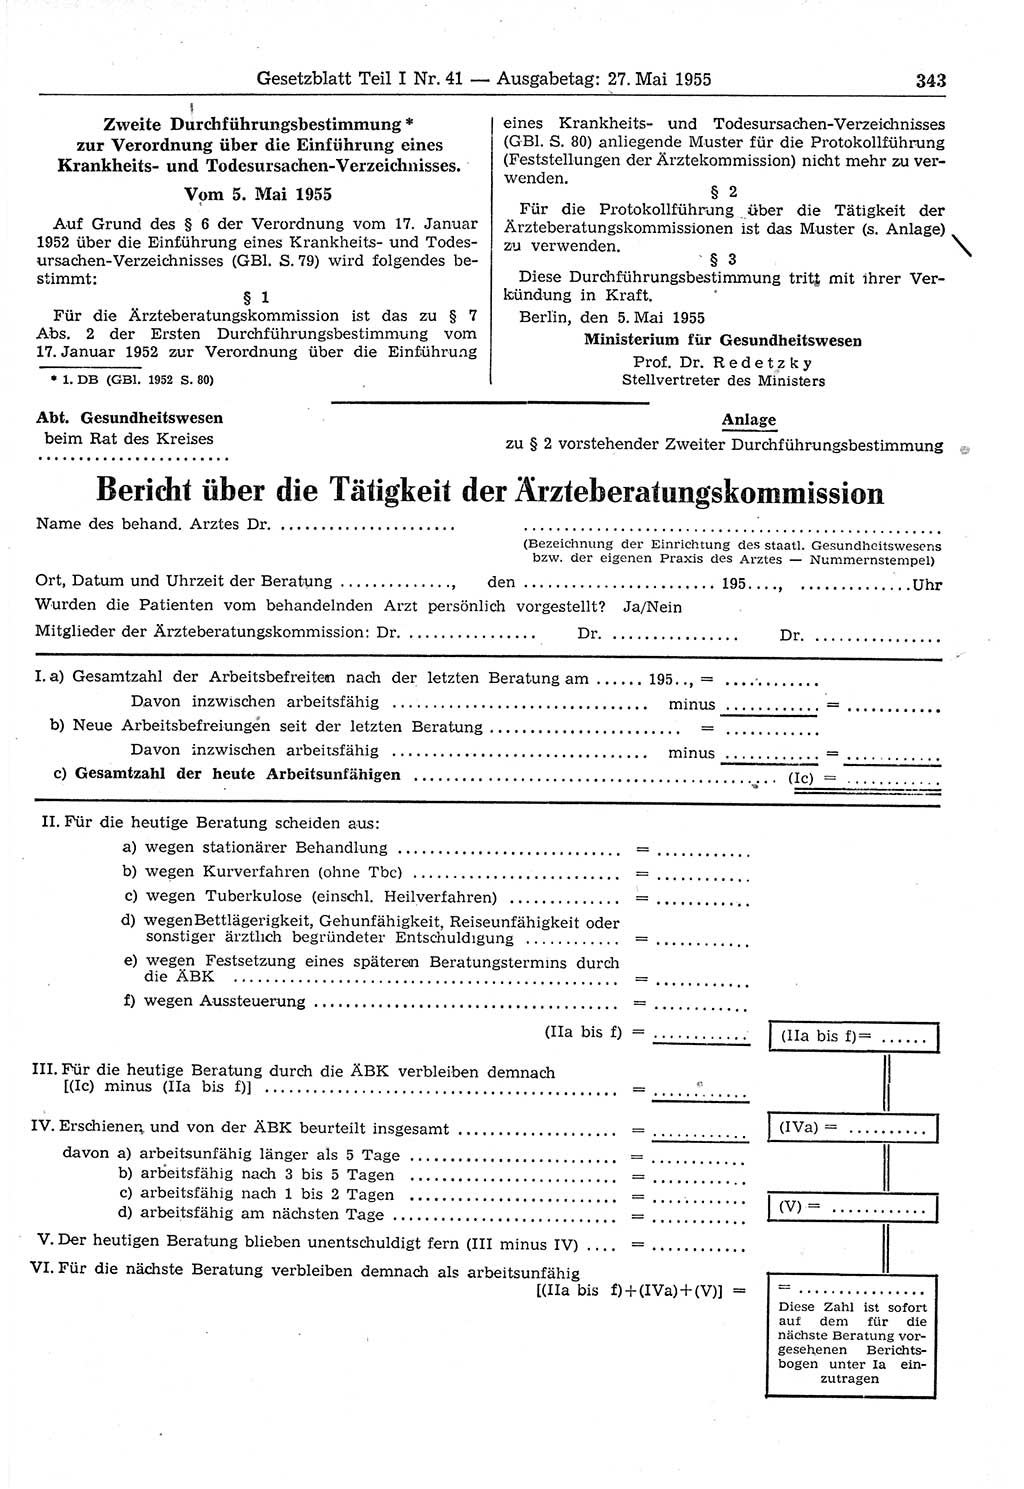 Gesetzblatt (GBl.) der Deutschen Demokratischen Republik (DDR) Teil Ⅰ 1955, Seite 343 (GBl. DDR Ⅰ 1955, S. 343)